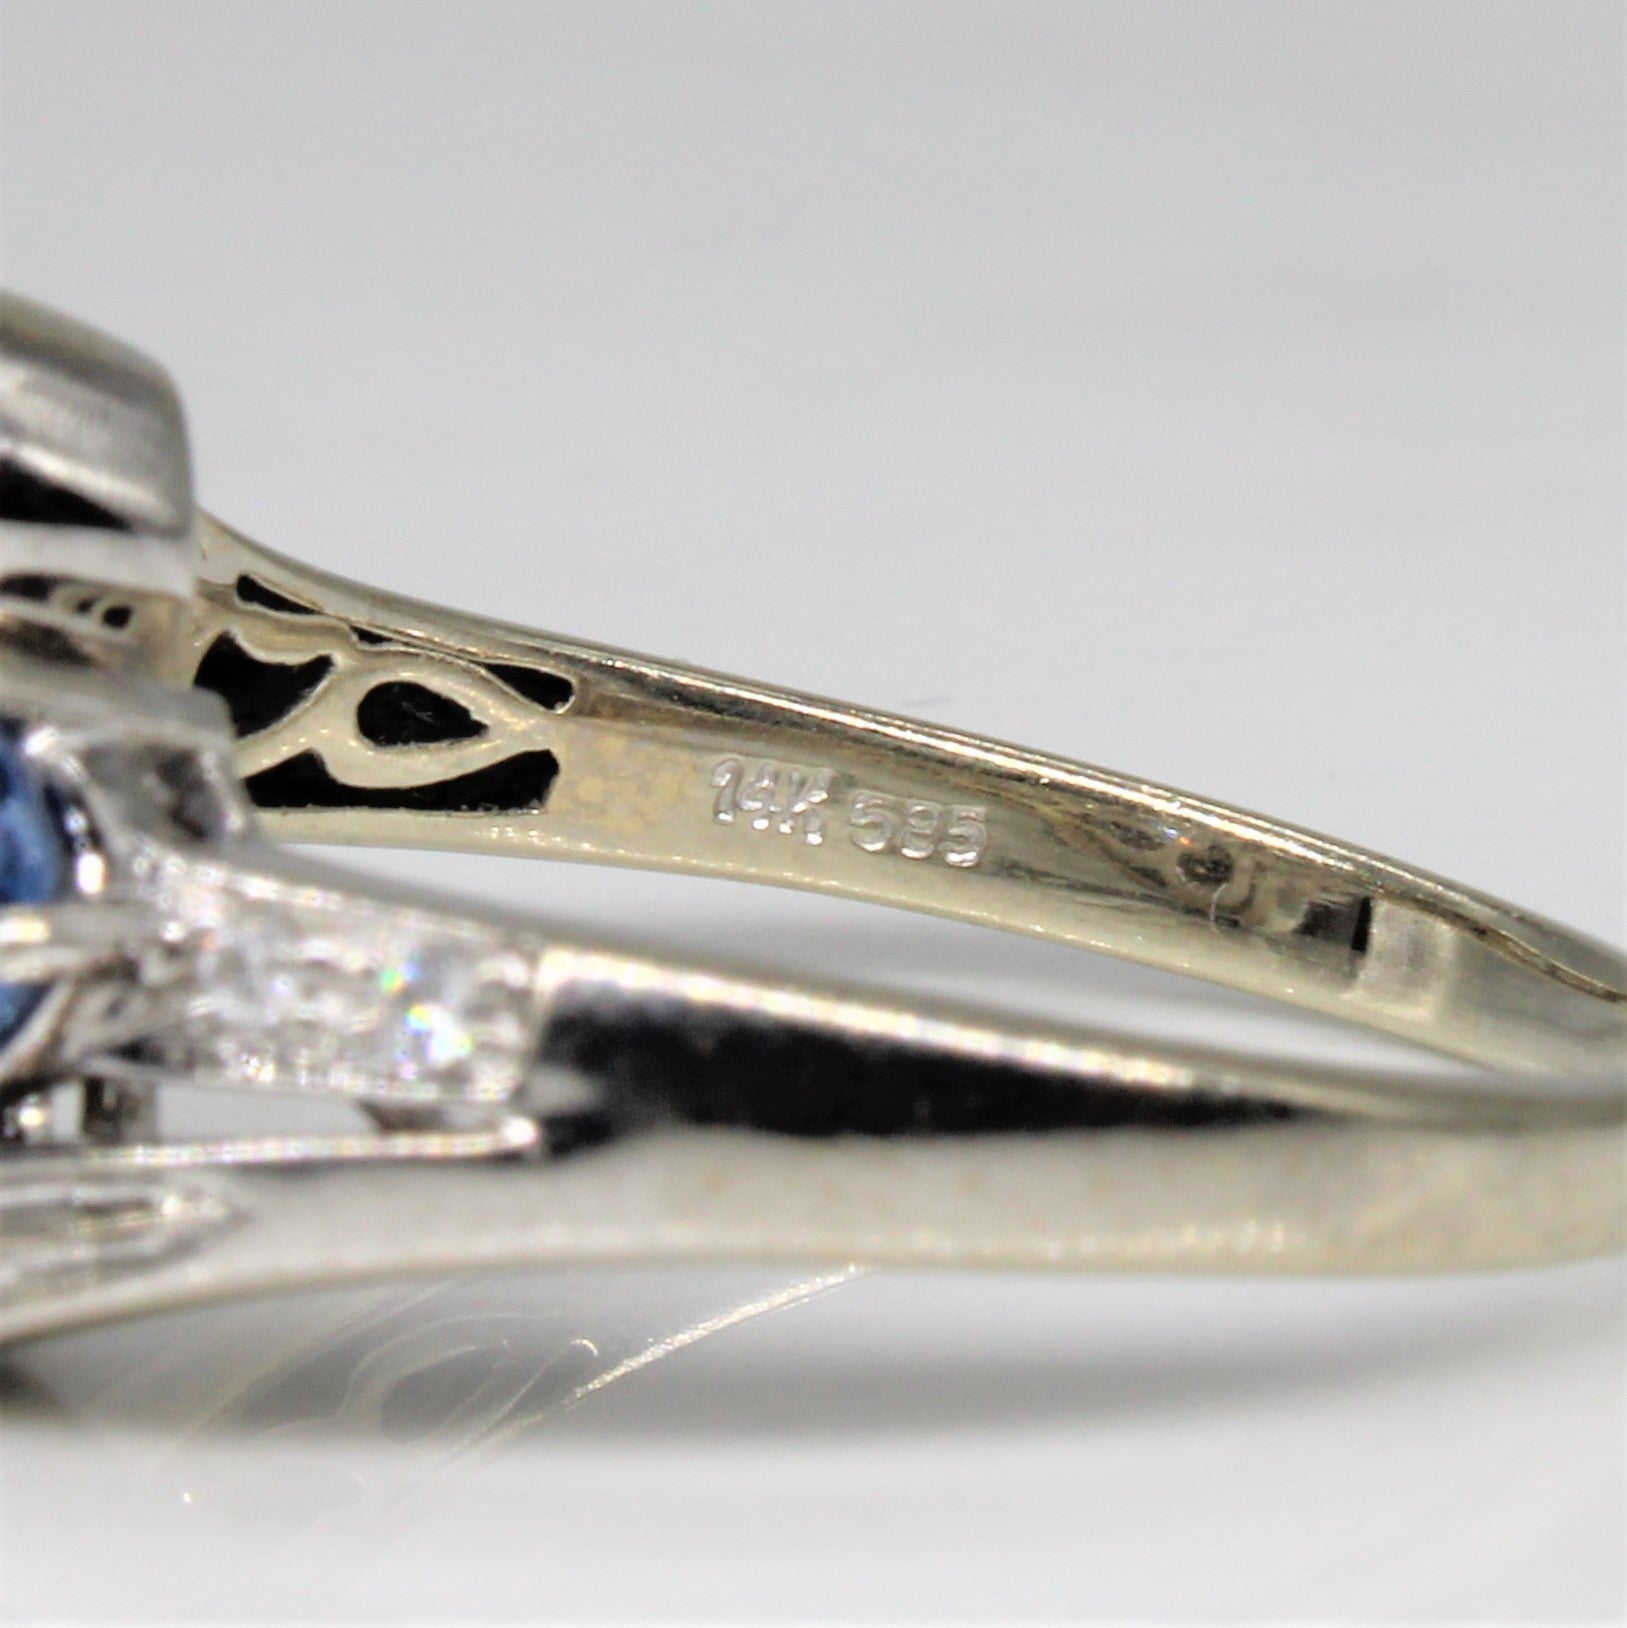 Sapphire & Diamond Bypass Ring | 0.80ctw, 0.09ctw | SZ 8 |